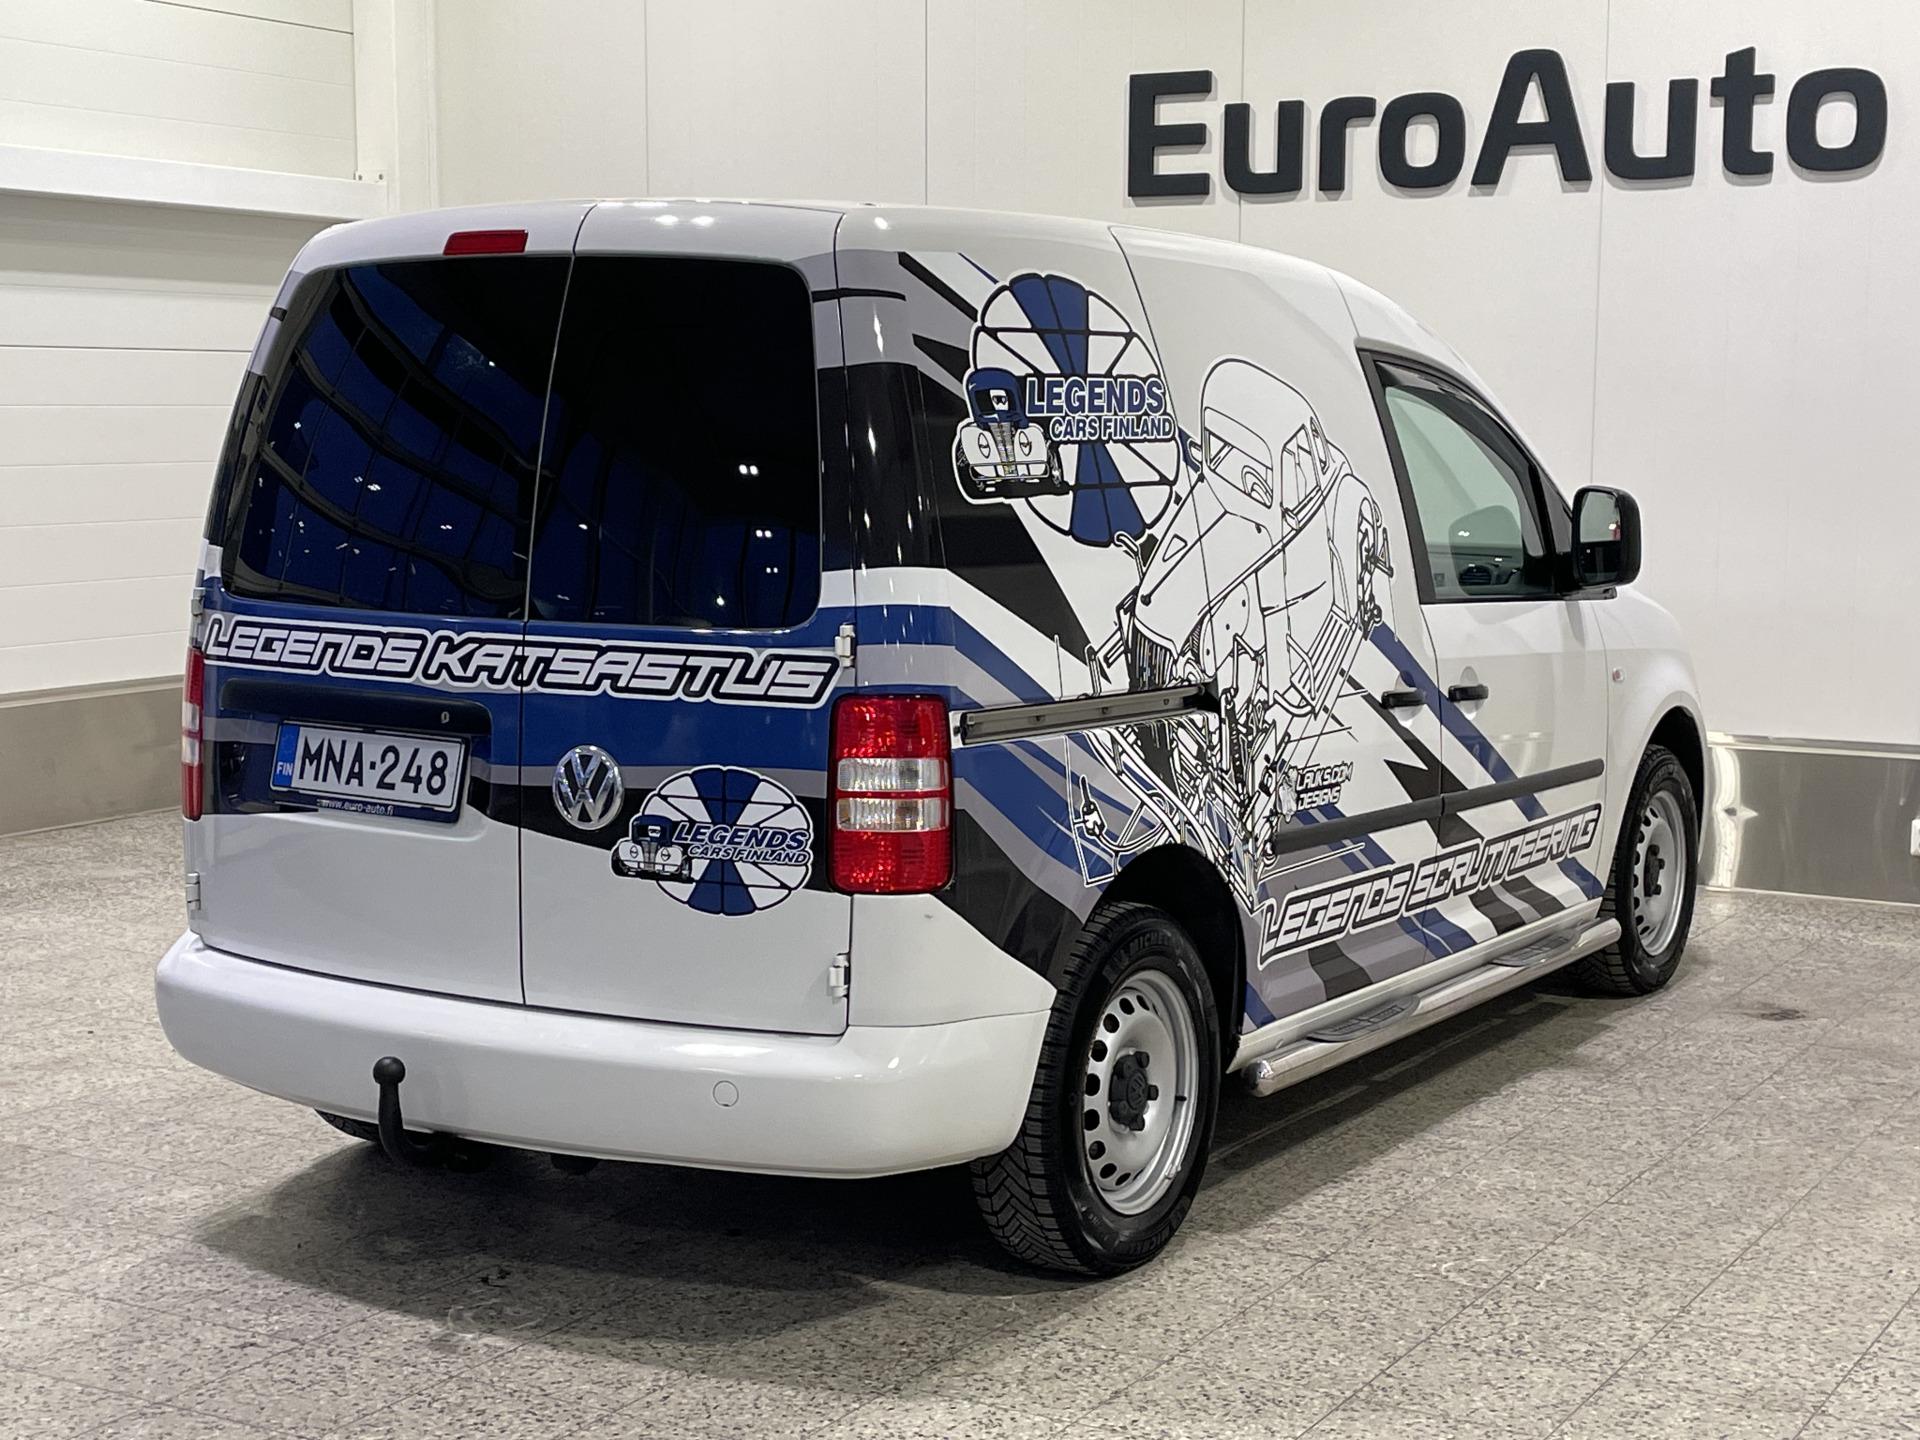 Volkswagen Caddy - EuroAuto